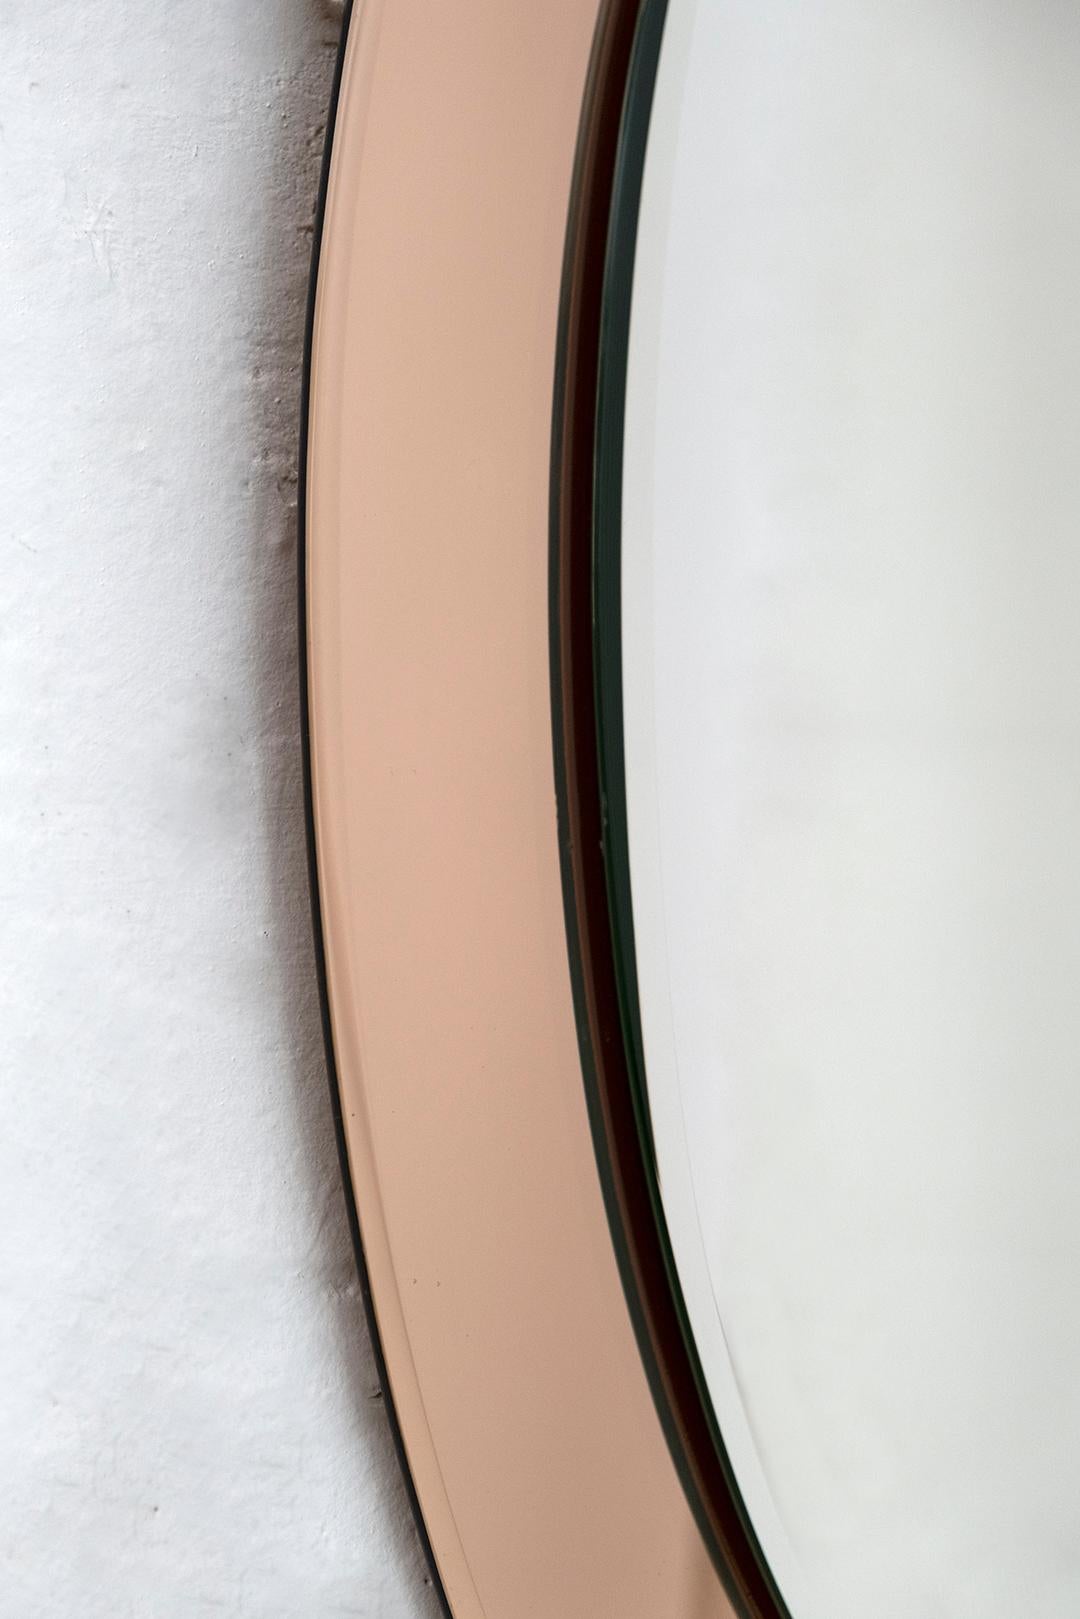 Ce miroir a été conçu et produit par Antonio Lupi pour Cristal Luxor.
Comme le montre la photo, il présente deux rayures sur le cadre qui l'entoure, dans la partie supérieure.

Antonio Lupi est né à Vinci en Italie en 1932. À l'âge de 18 ans, il